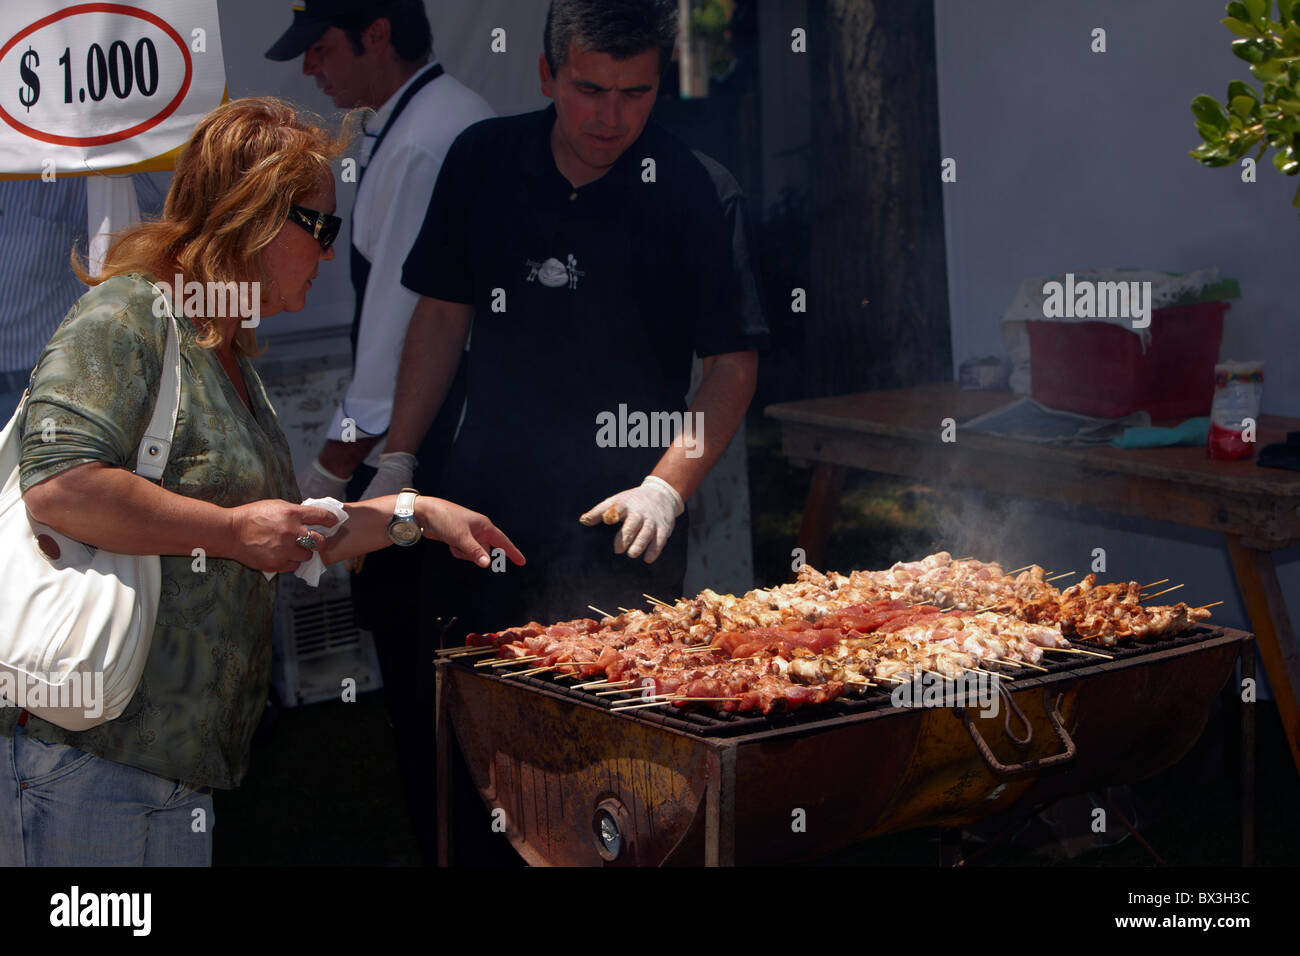 Grilling pork kebabs in La Plaza de Armas, Santa Cruz, Colchagua Valley, Chile. Stock Photo